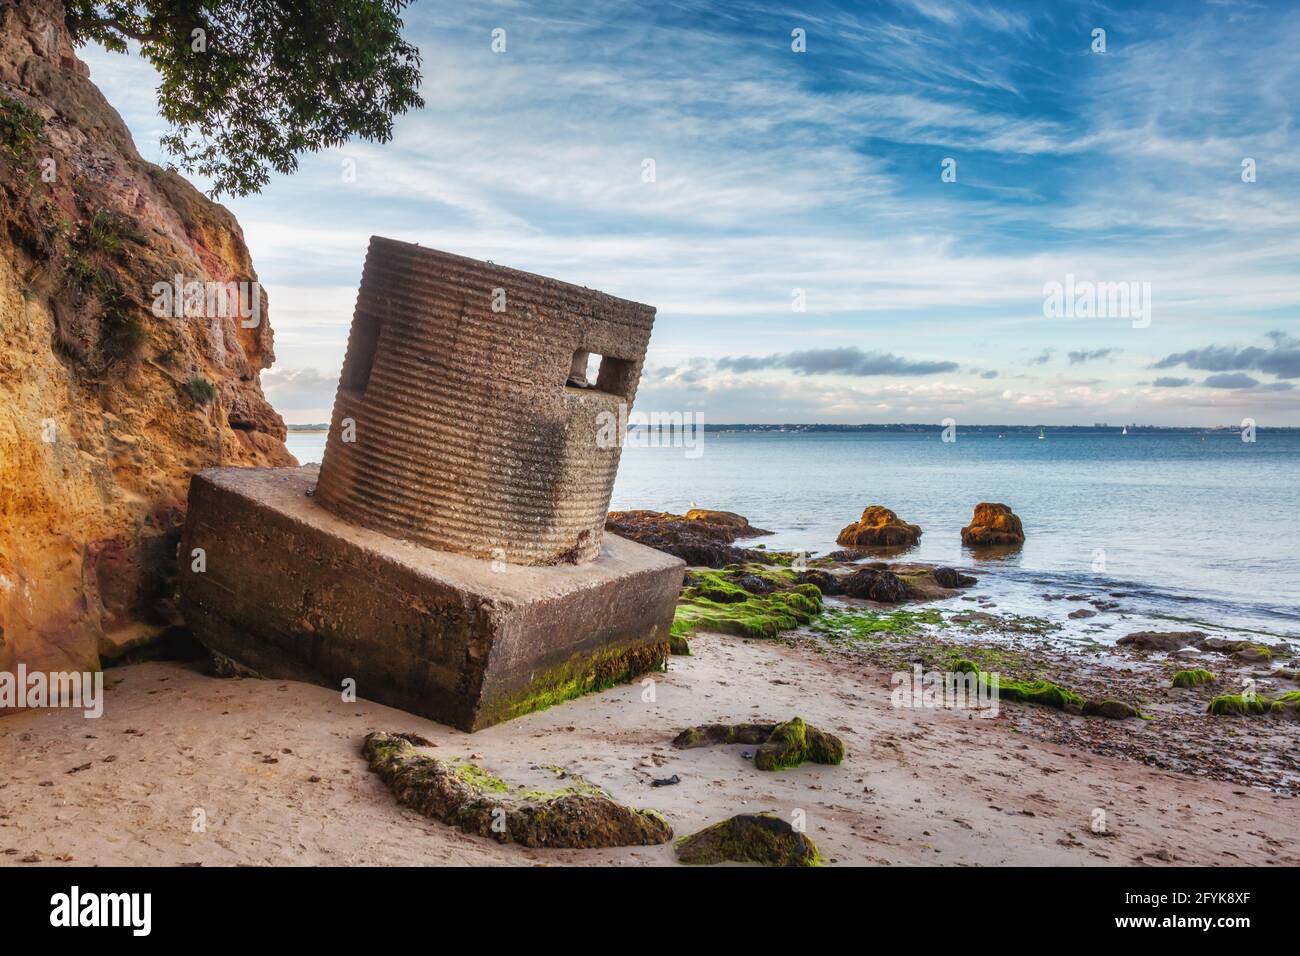 Un pilbox de la Seconde Guerre mondiale à Studland Bay dans Dorset. Preuve de la défense du Royaume autour de notre côte. Banque D'Images